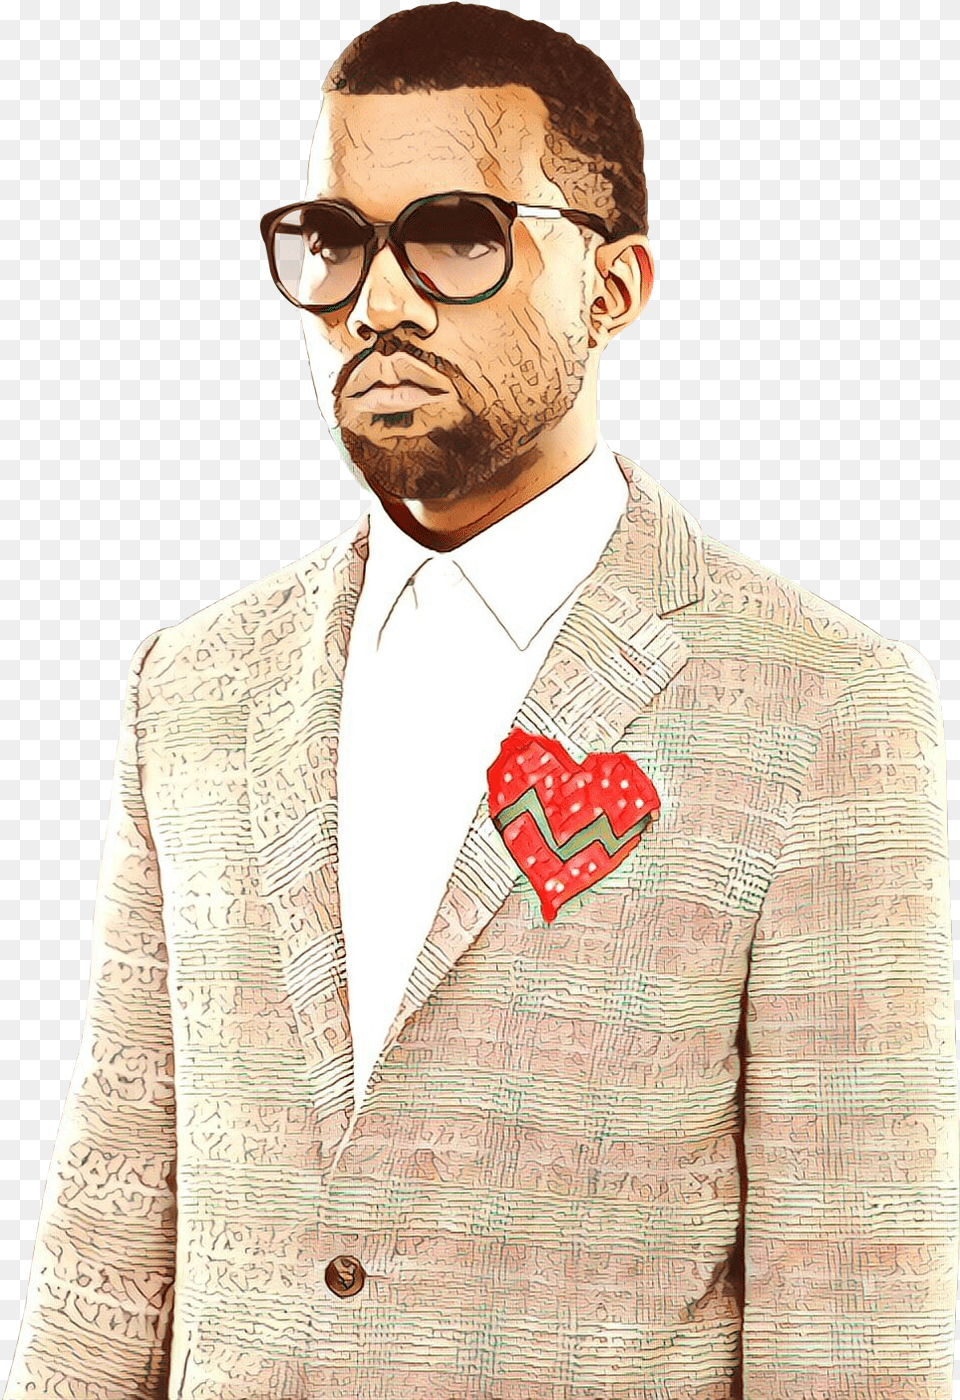 Kanye West 808s Amp Heartbreak Hip Hop Music Moustache, Accessories, Sunglasses, Suit, Person Free Png Download